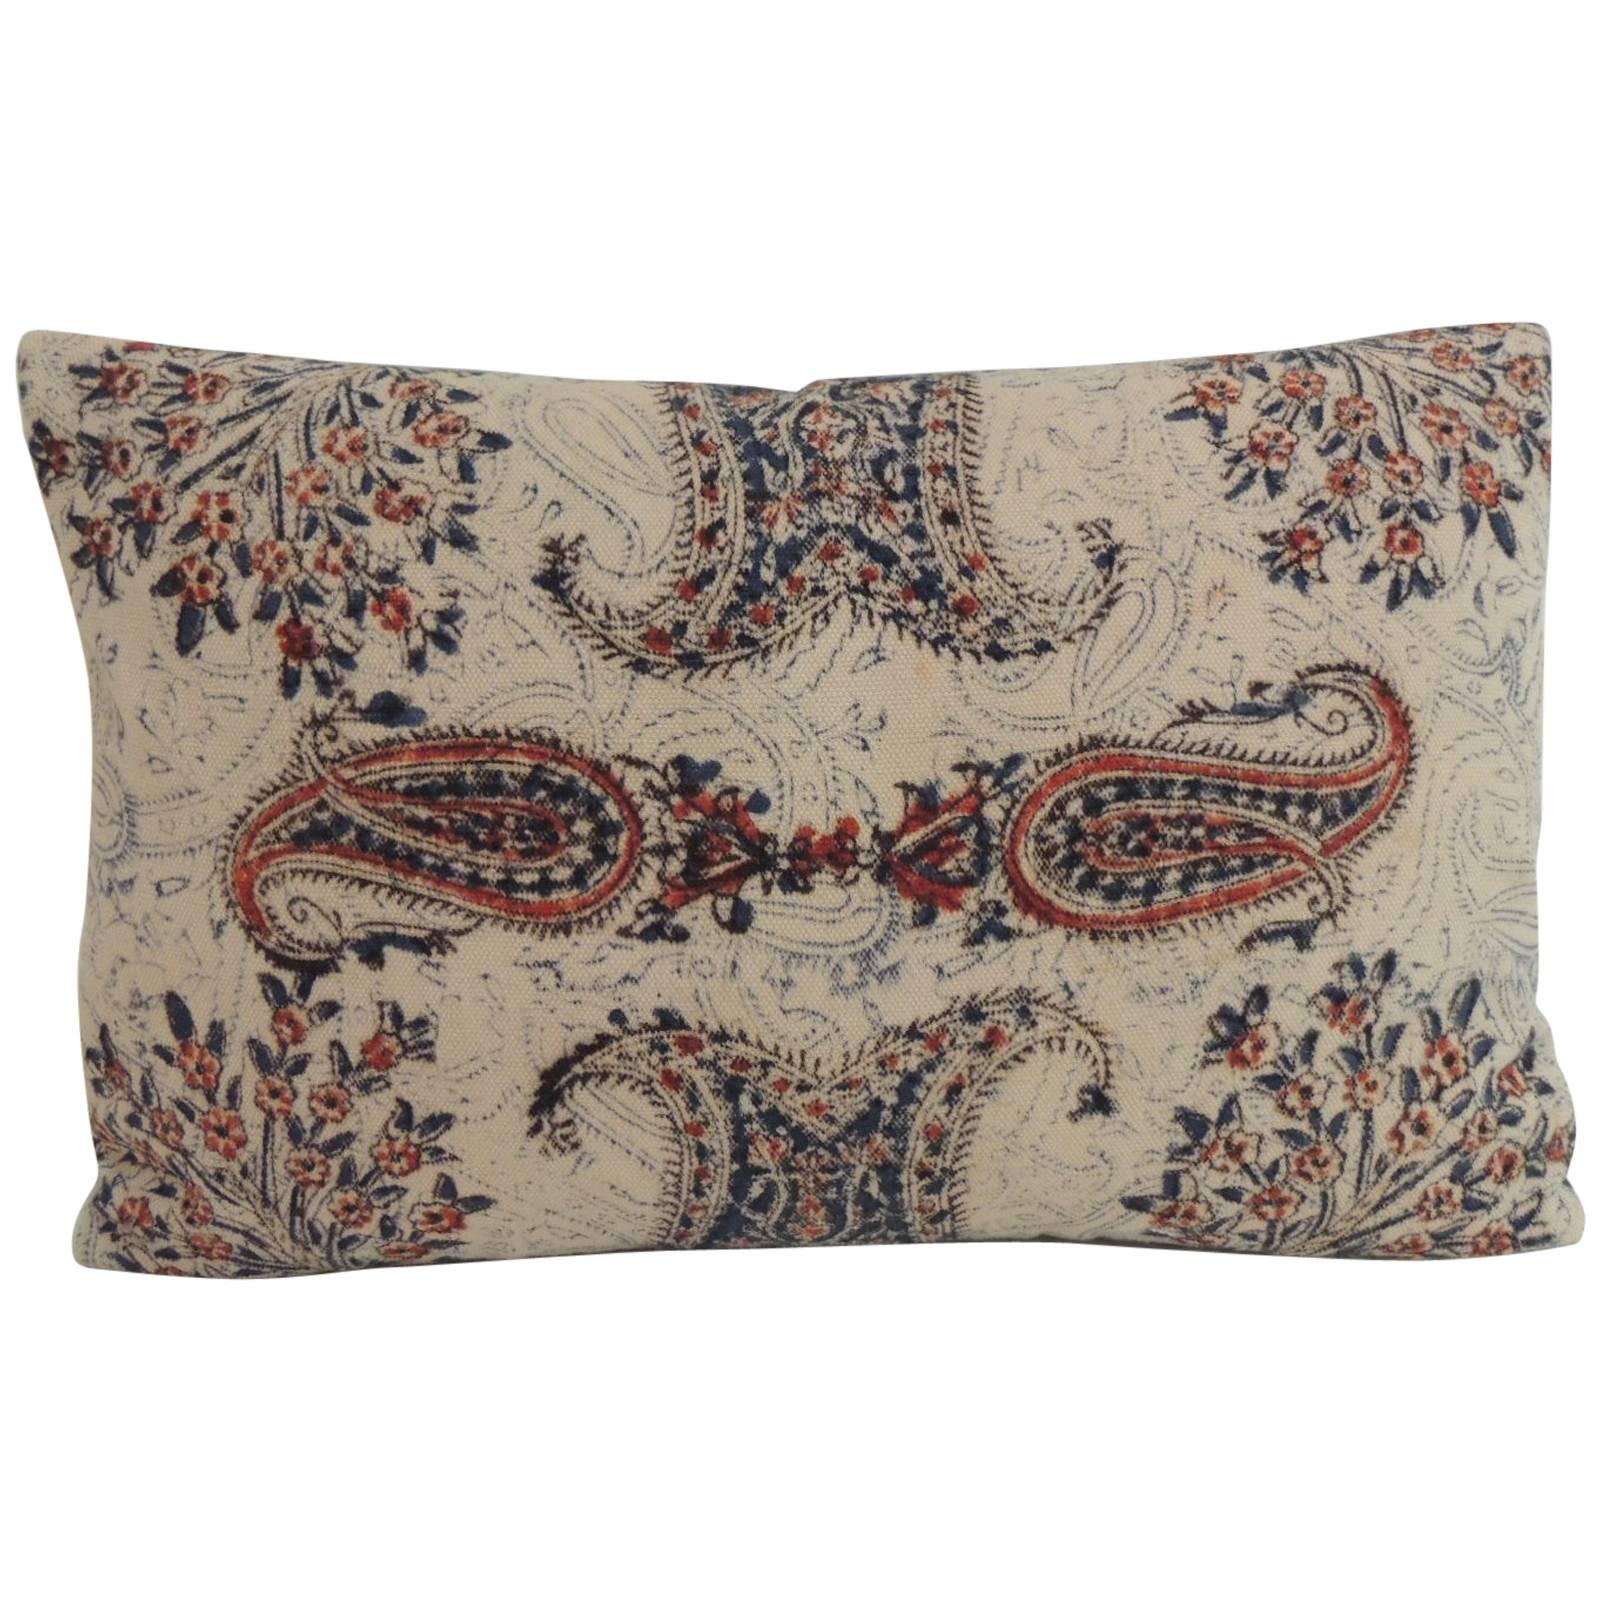 Antique Indian Kalamkari Hand-Blocked Stylized Paisley Decorative Lumbar Pillow